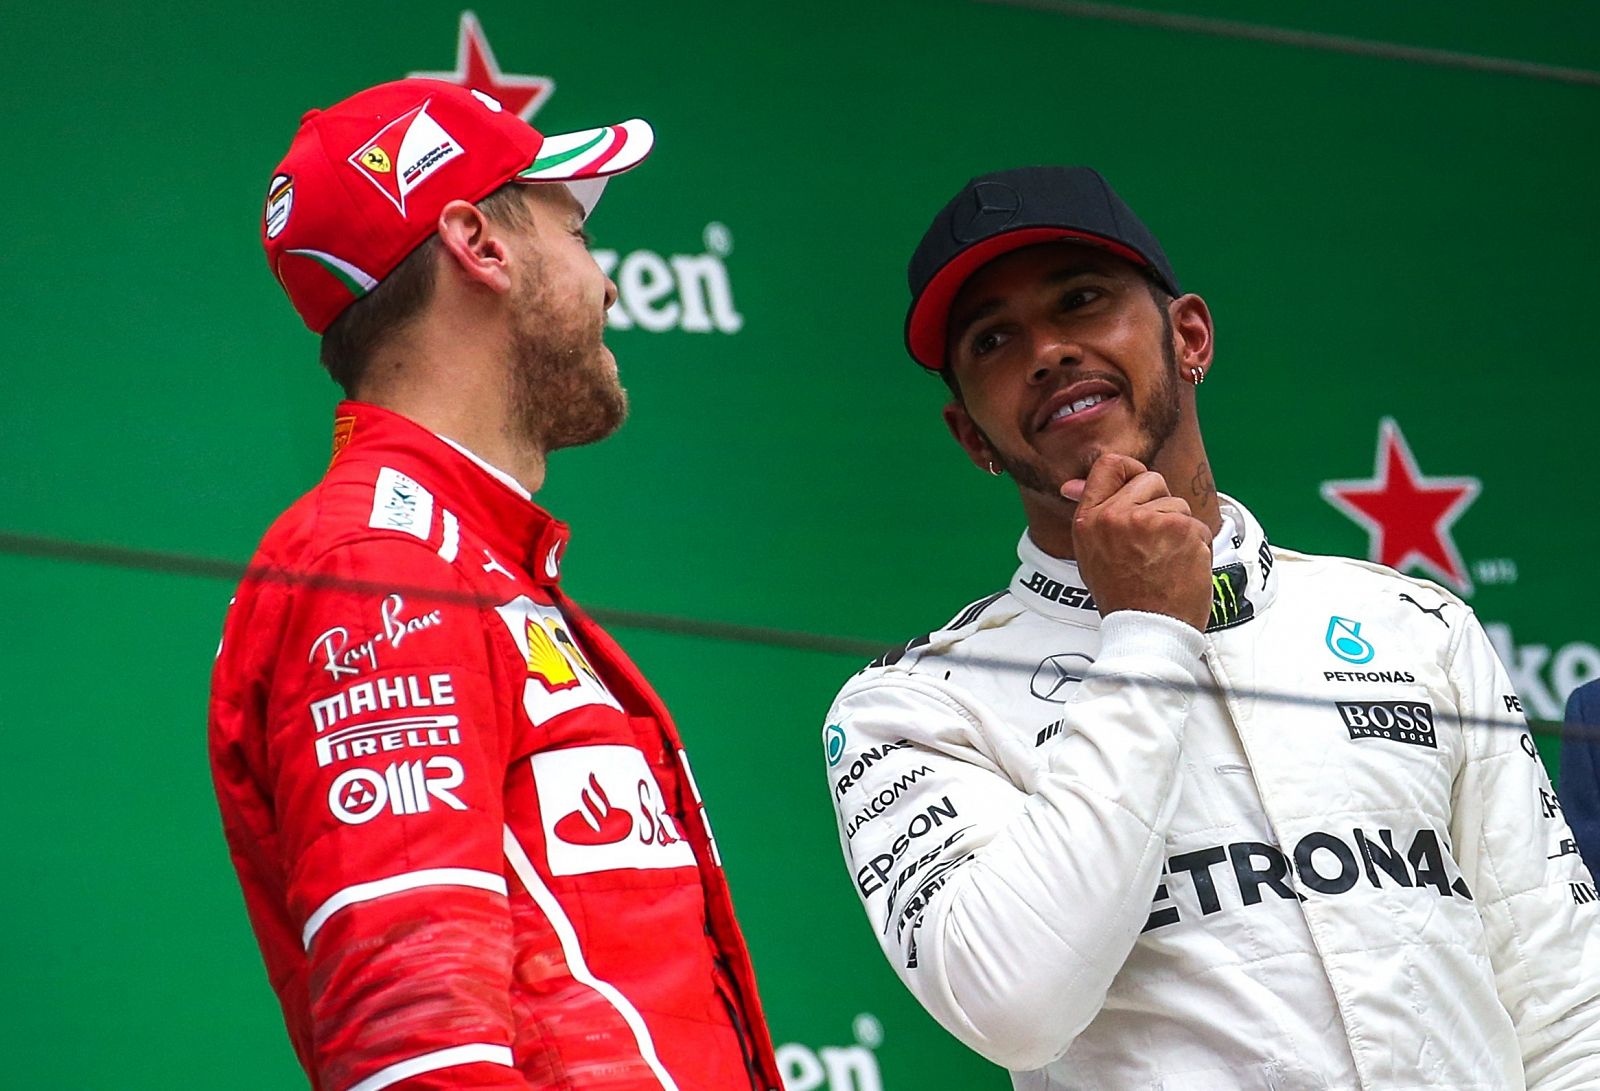 Ambos pilotos son claros favoritos para optar al título de 2017.